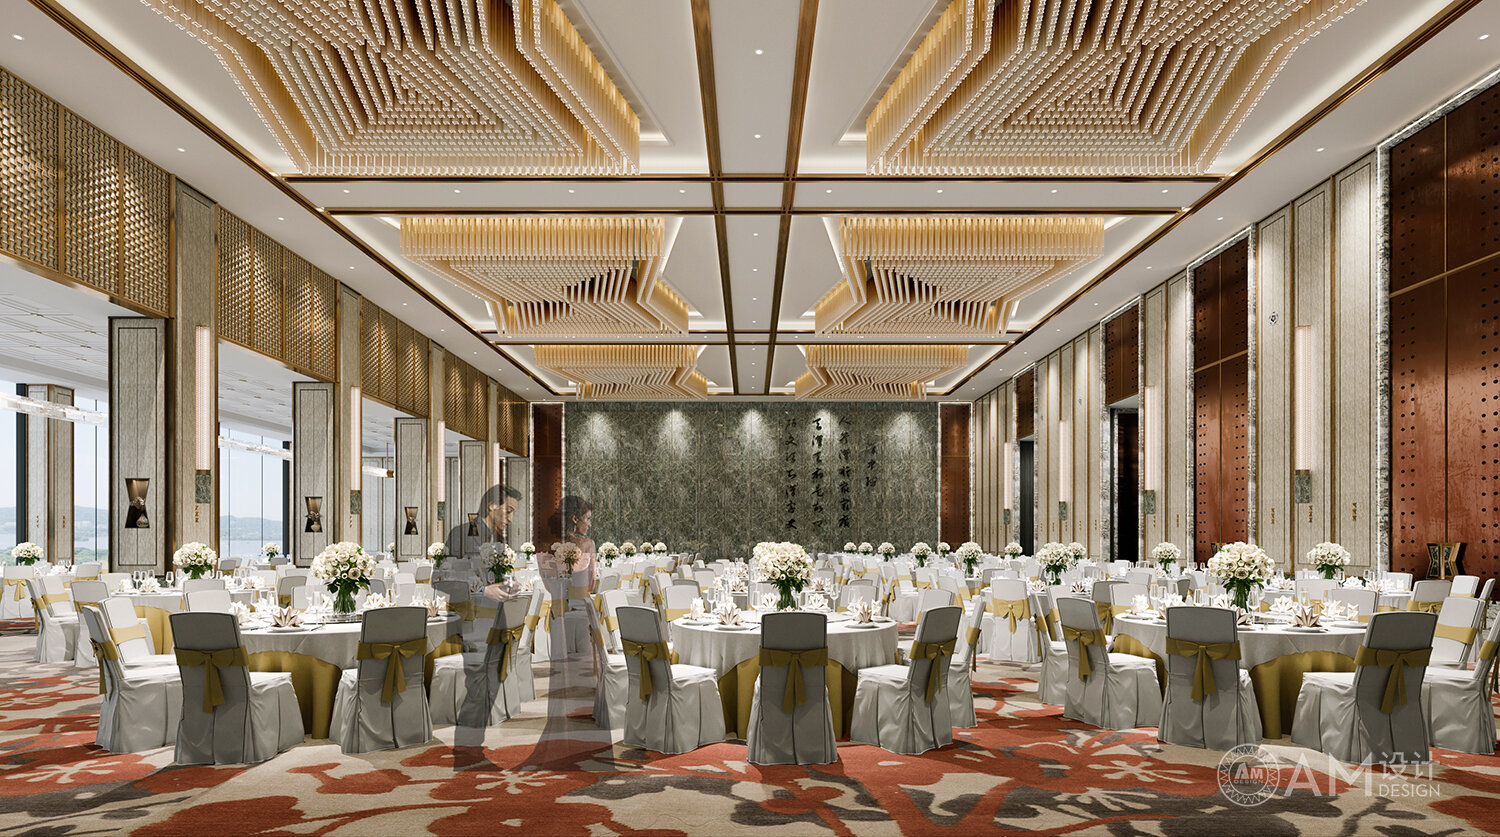 AM DESIGN | Banquet hall design of Shaanxi Nanhu Resort Hotel